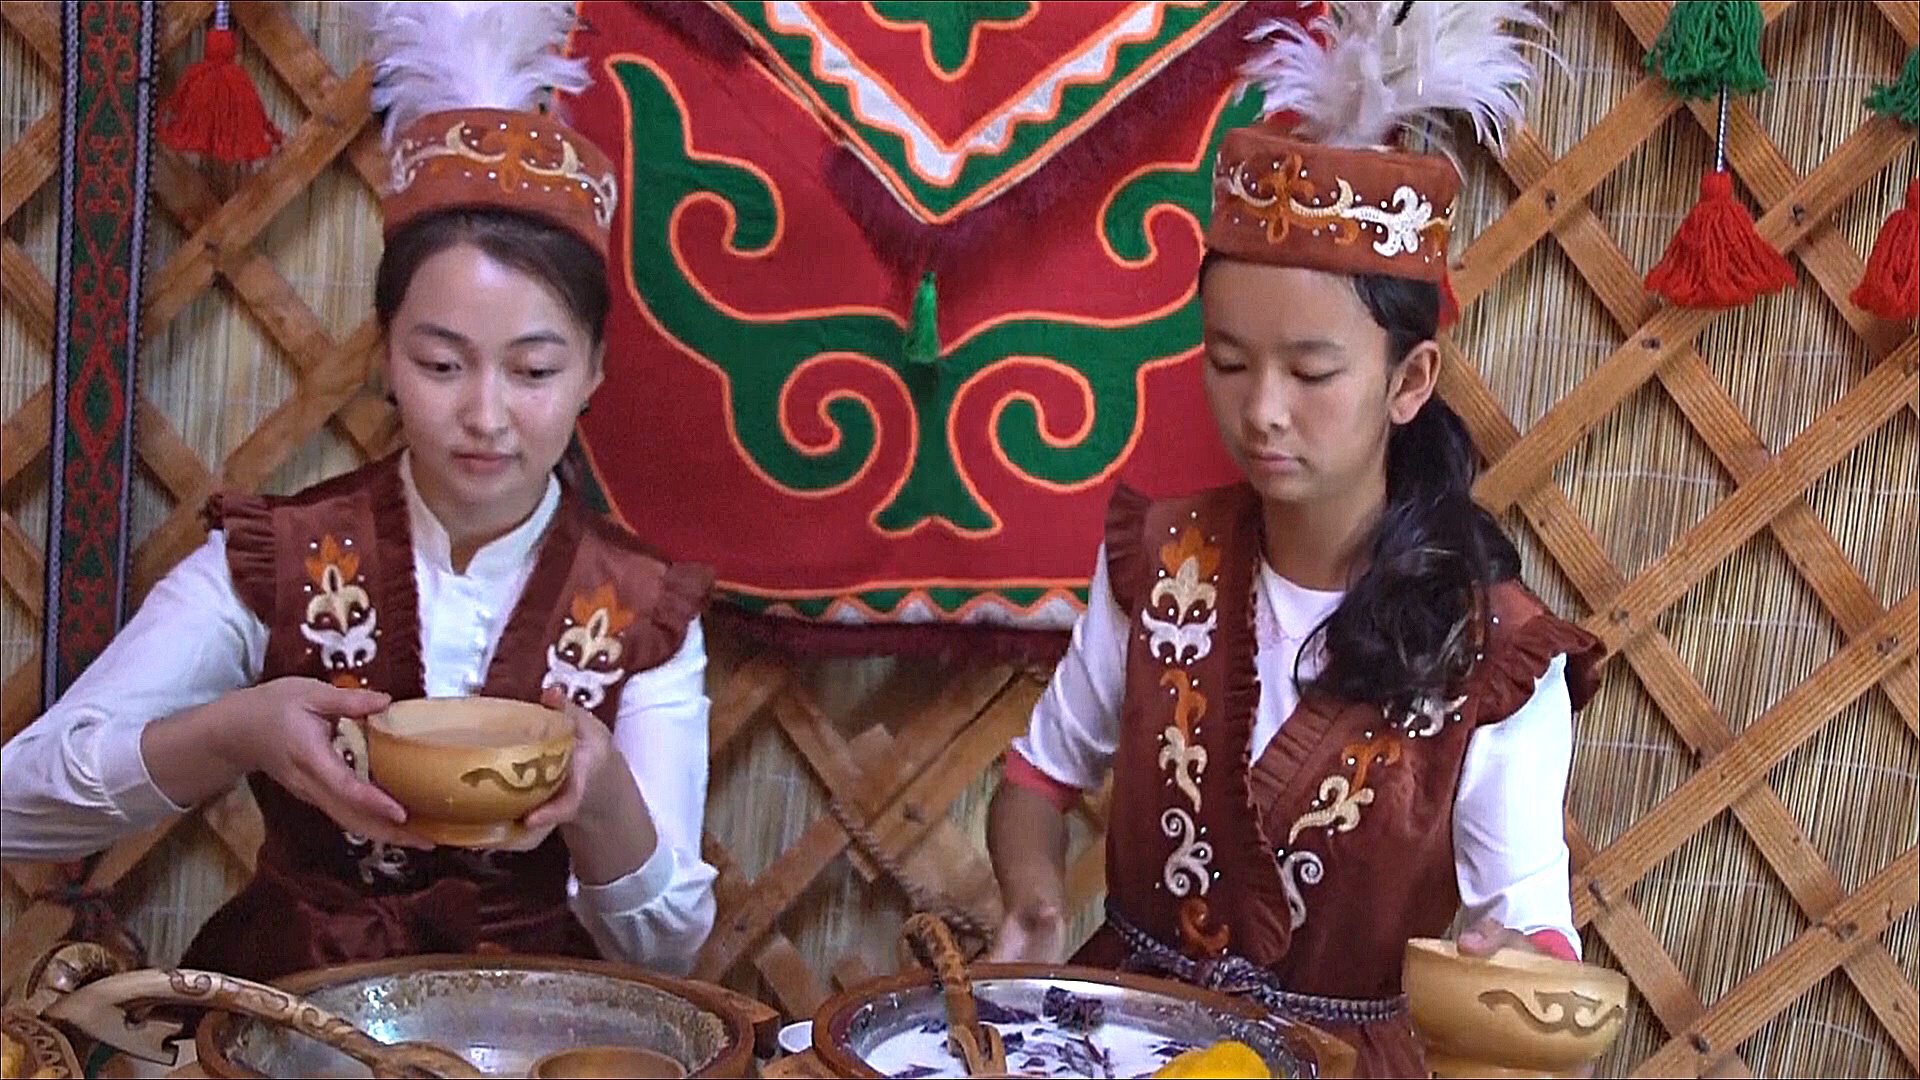 Фестиваль кумыса проходит среди кыргызских гор